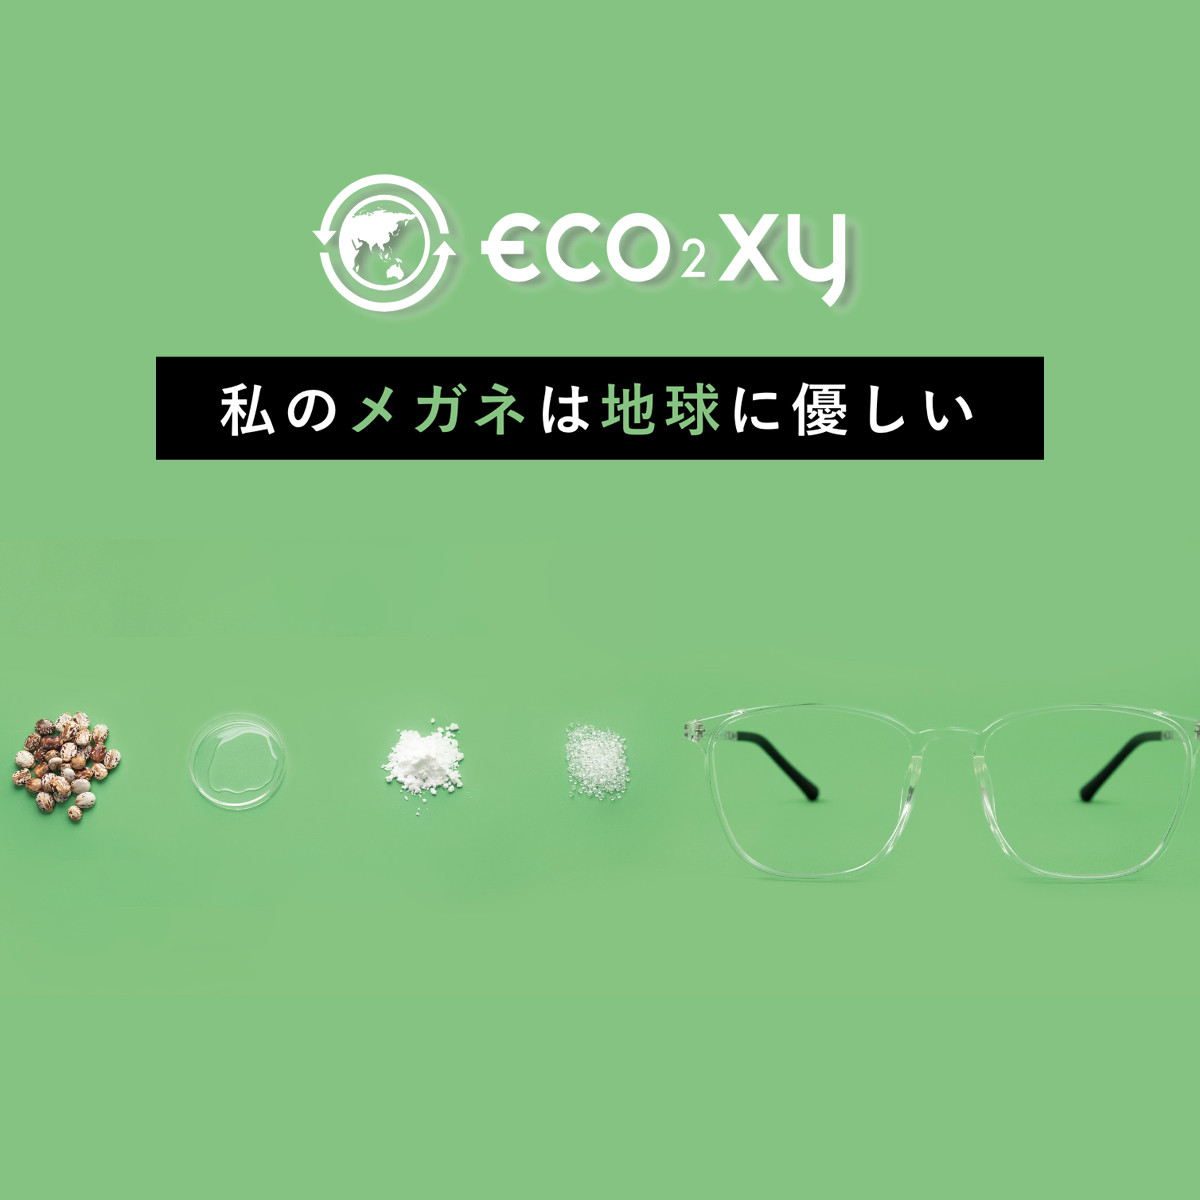 eco²xy